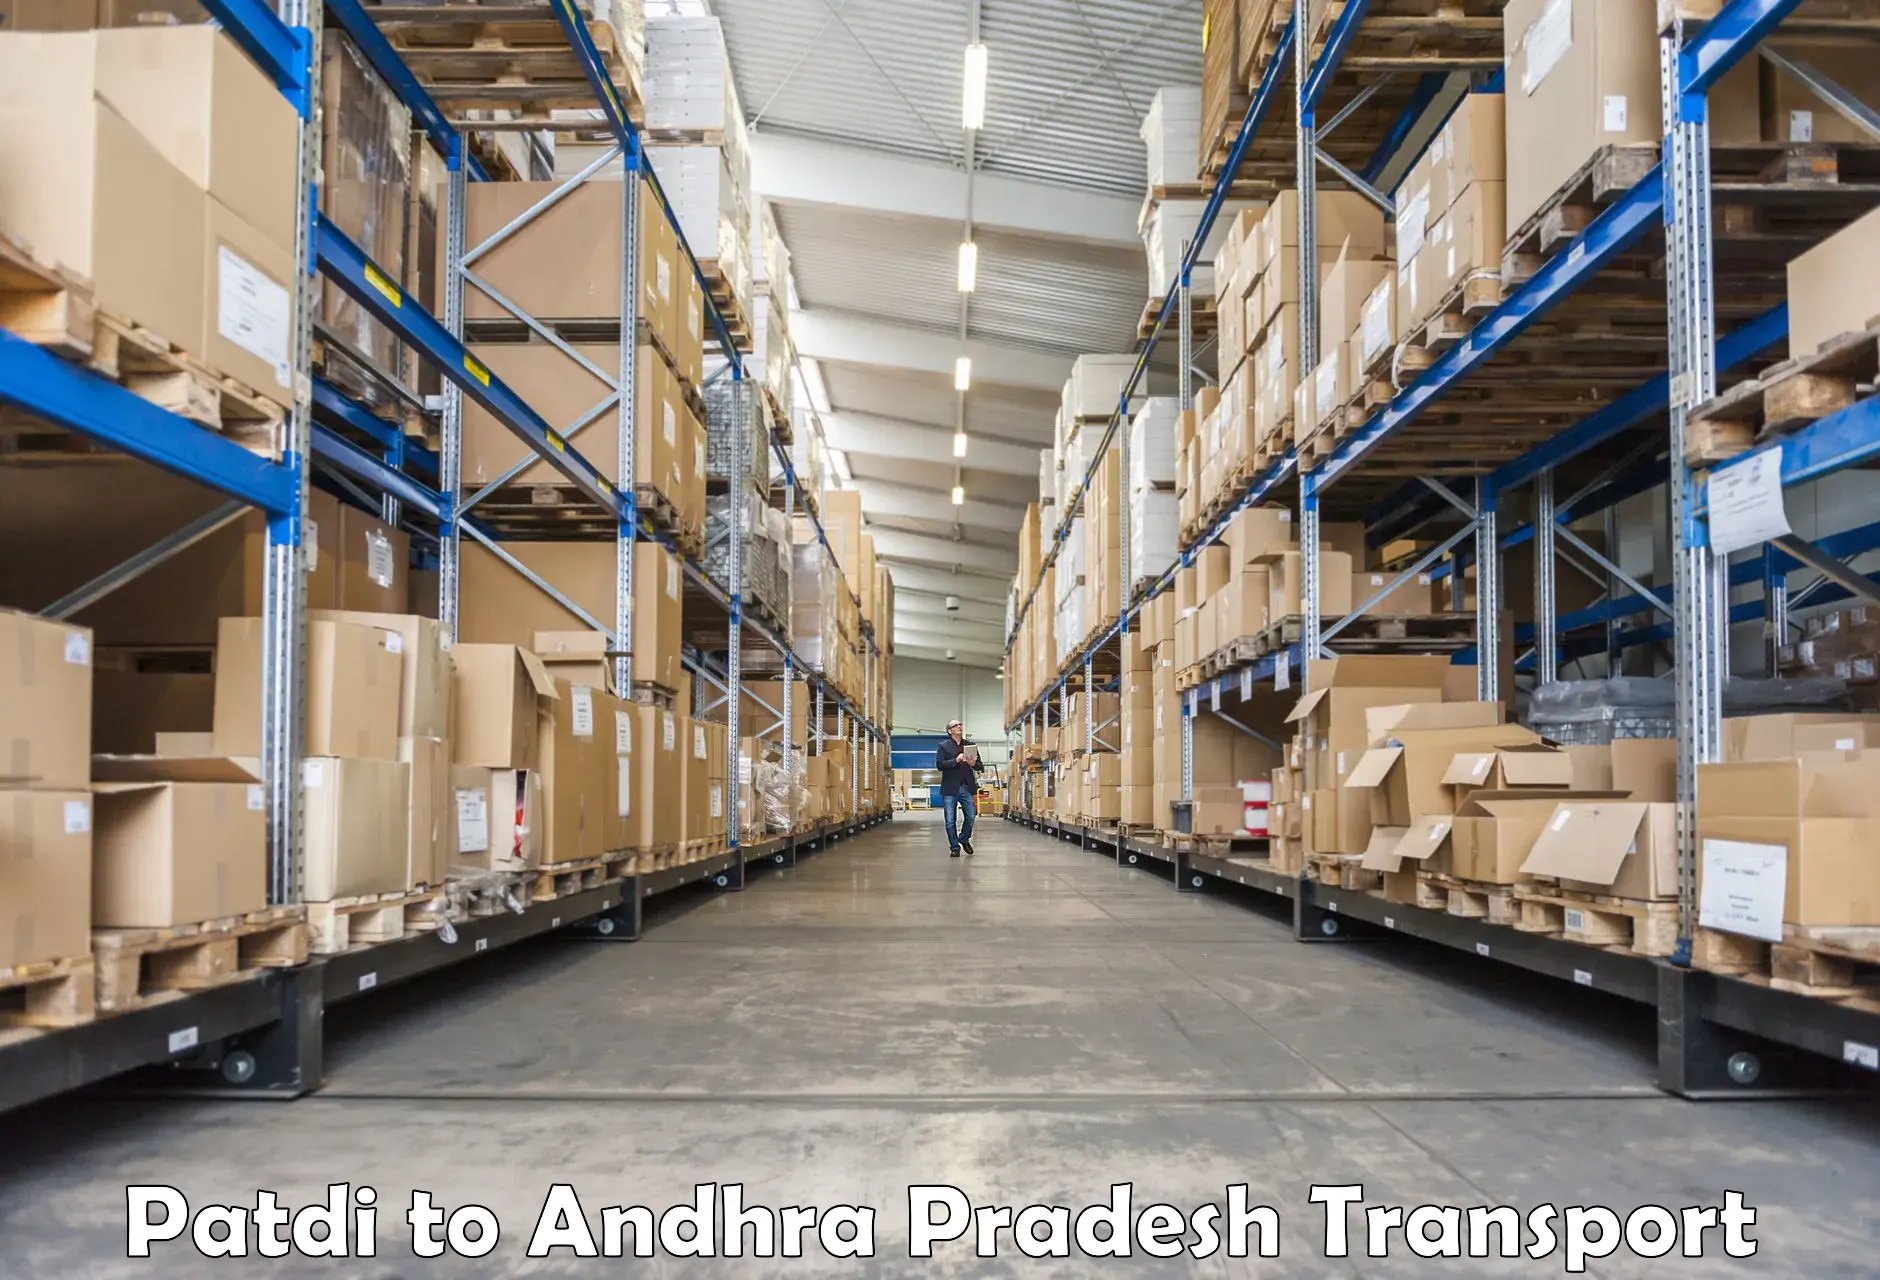 Transport in sharing Patdi to Garividi